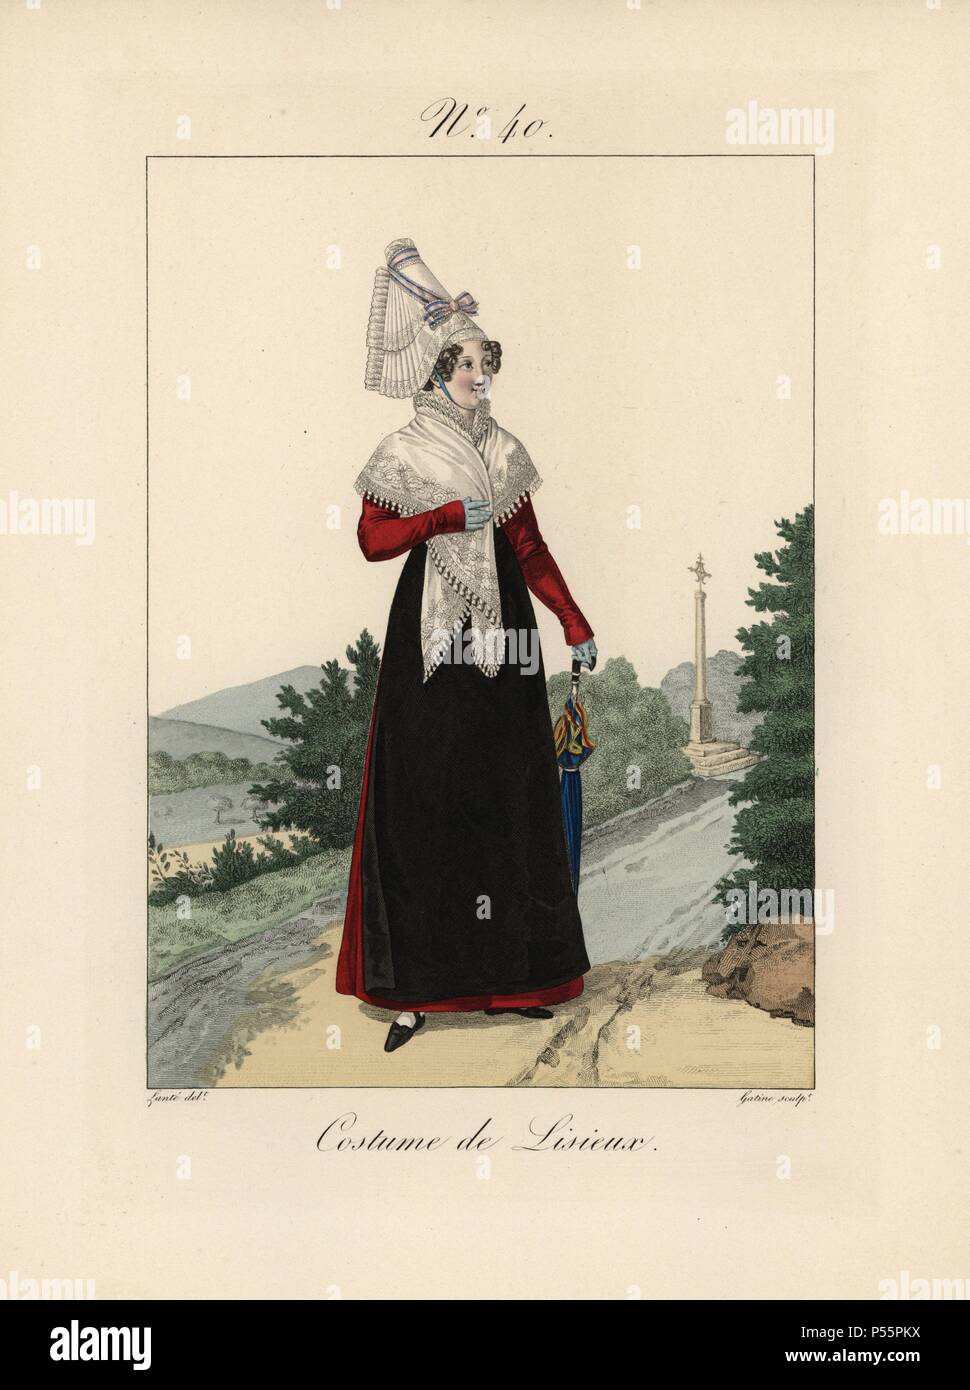 Frau in Tracht von Lisieux. Sie trägt ein rosa und blauen Band zu Ihrem bavolet Motorhaube gebunden. Sie trägt ein lace Shawl, schwarze Schürze, Crimson Kleid, Himmel blau Handschuhe und trägt ein Regenschirm. Handcolorierte mode Platte Abbildung von Benoit Pecheux gestochen von Gatine von louis-marie's Lante' Kostüme des femmes du Pays de Caux", 1827/1885. Mit ihren hohen Elsässischen spitze Hüte, die Frauen von Caux und der Normandie waren berühmt für die Eleganz und Stil. Stockfoto